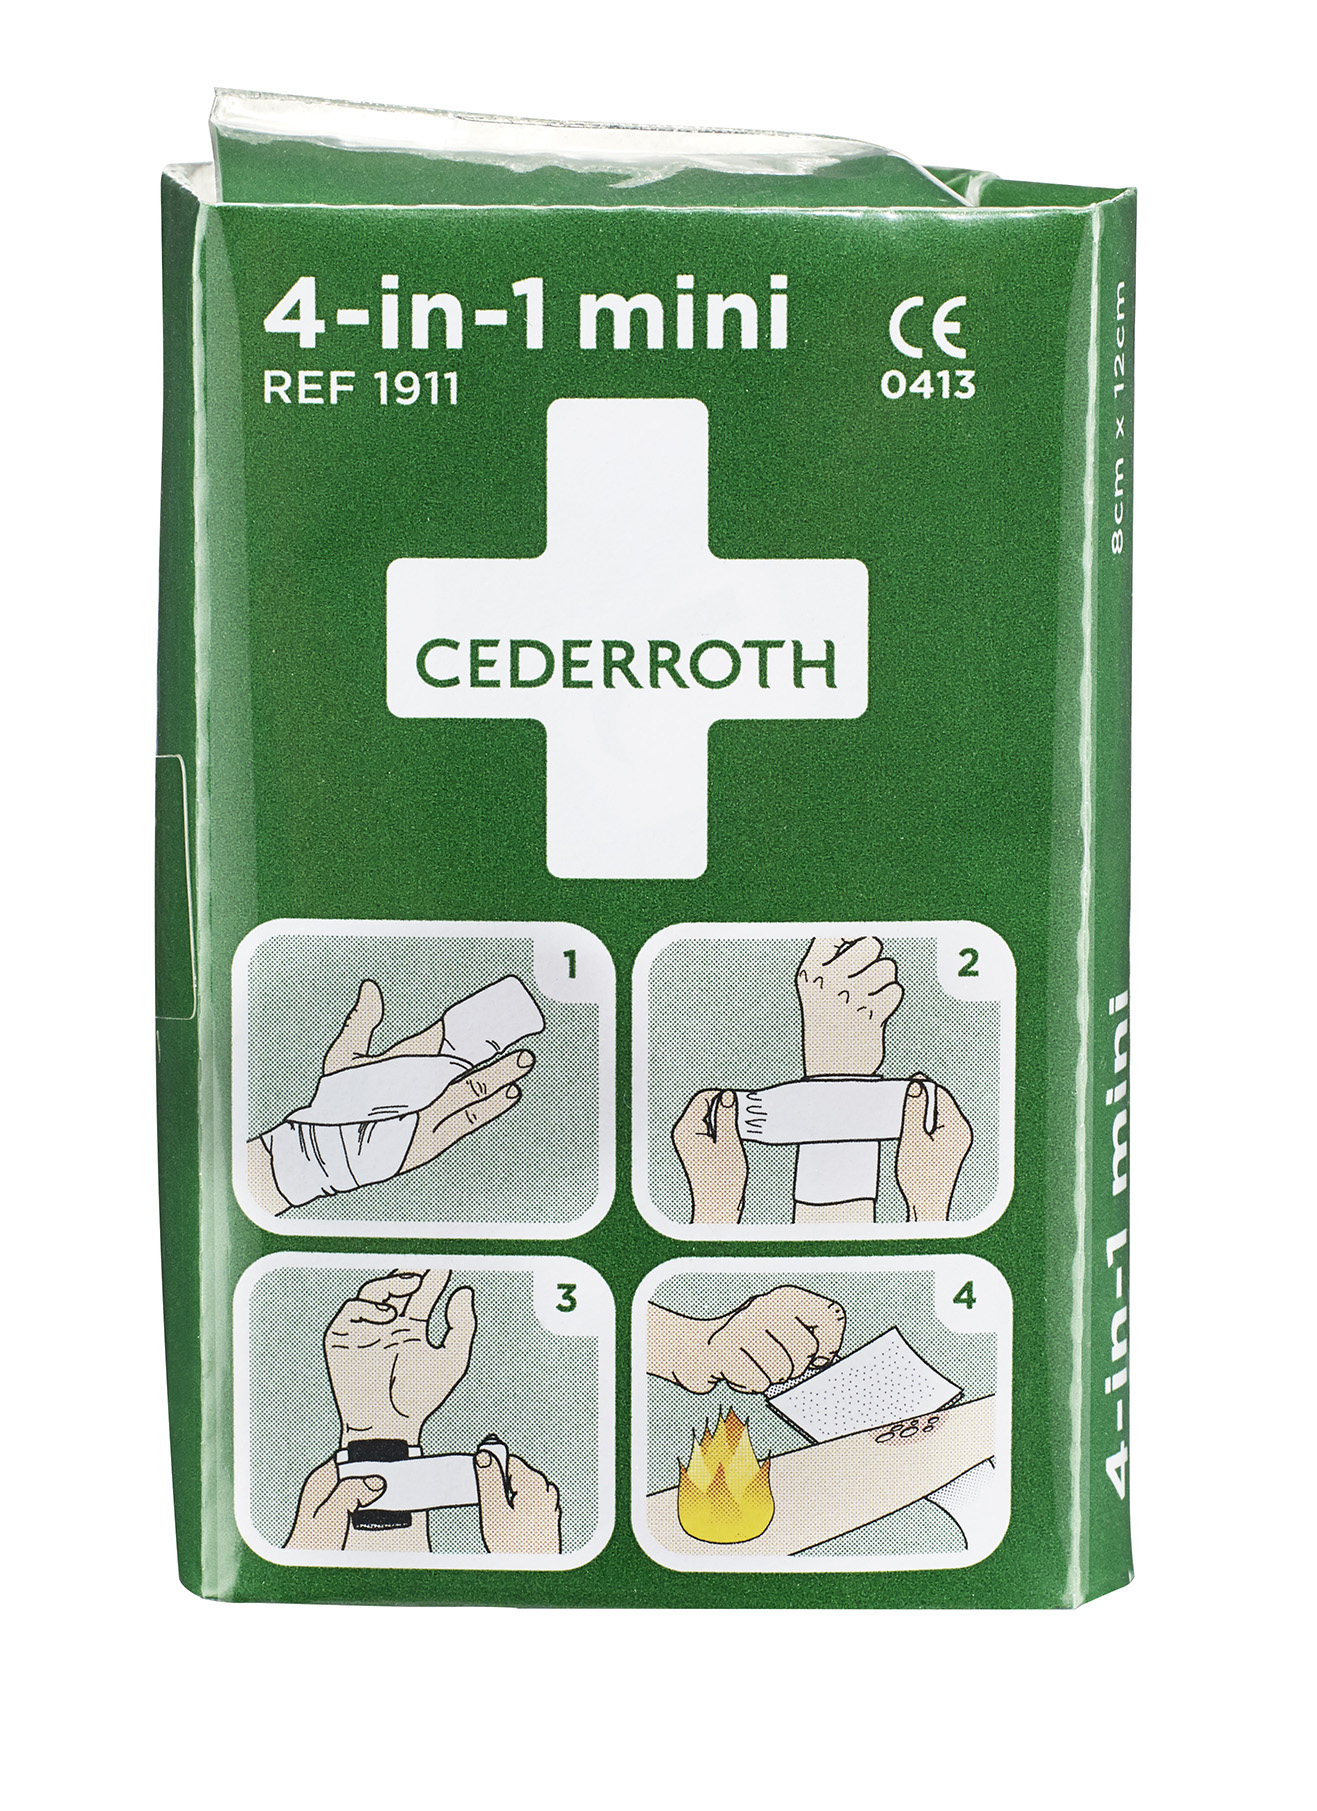 Cederroth 4-IN-1 mini Blodstop